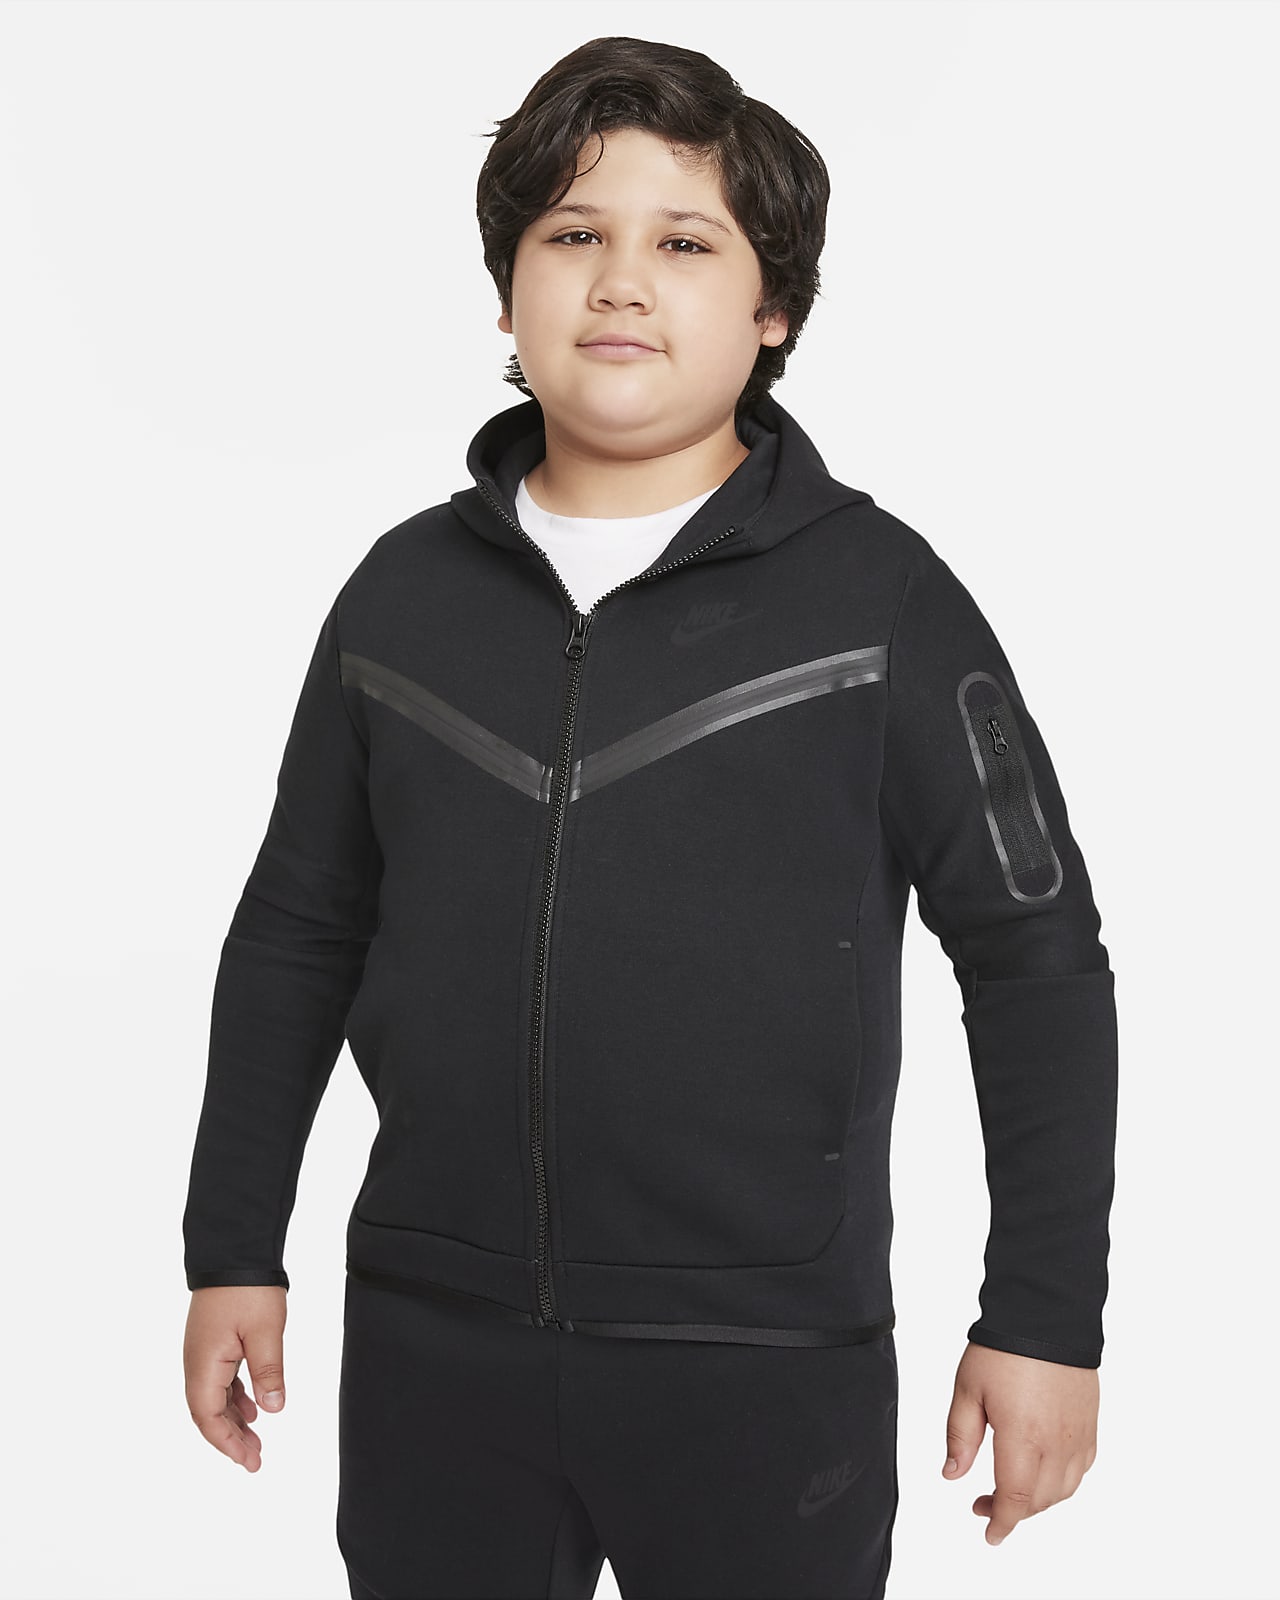 Nike Sportswear Tech Fleece Older Kids' (Boys') Full-Zip Hoodie (Extended Size)